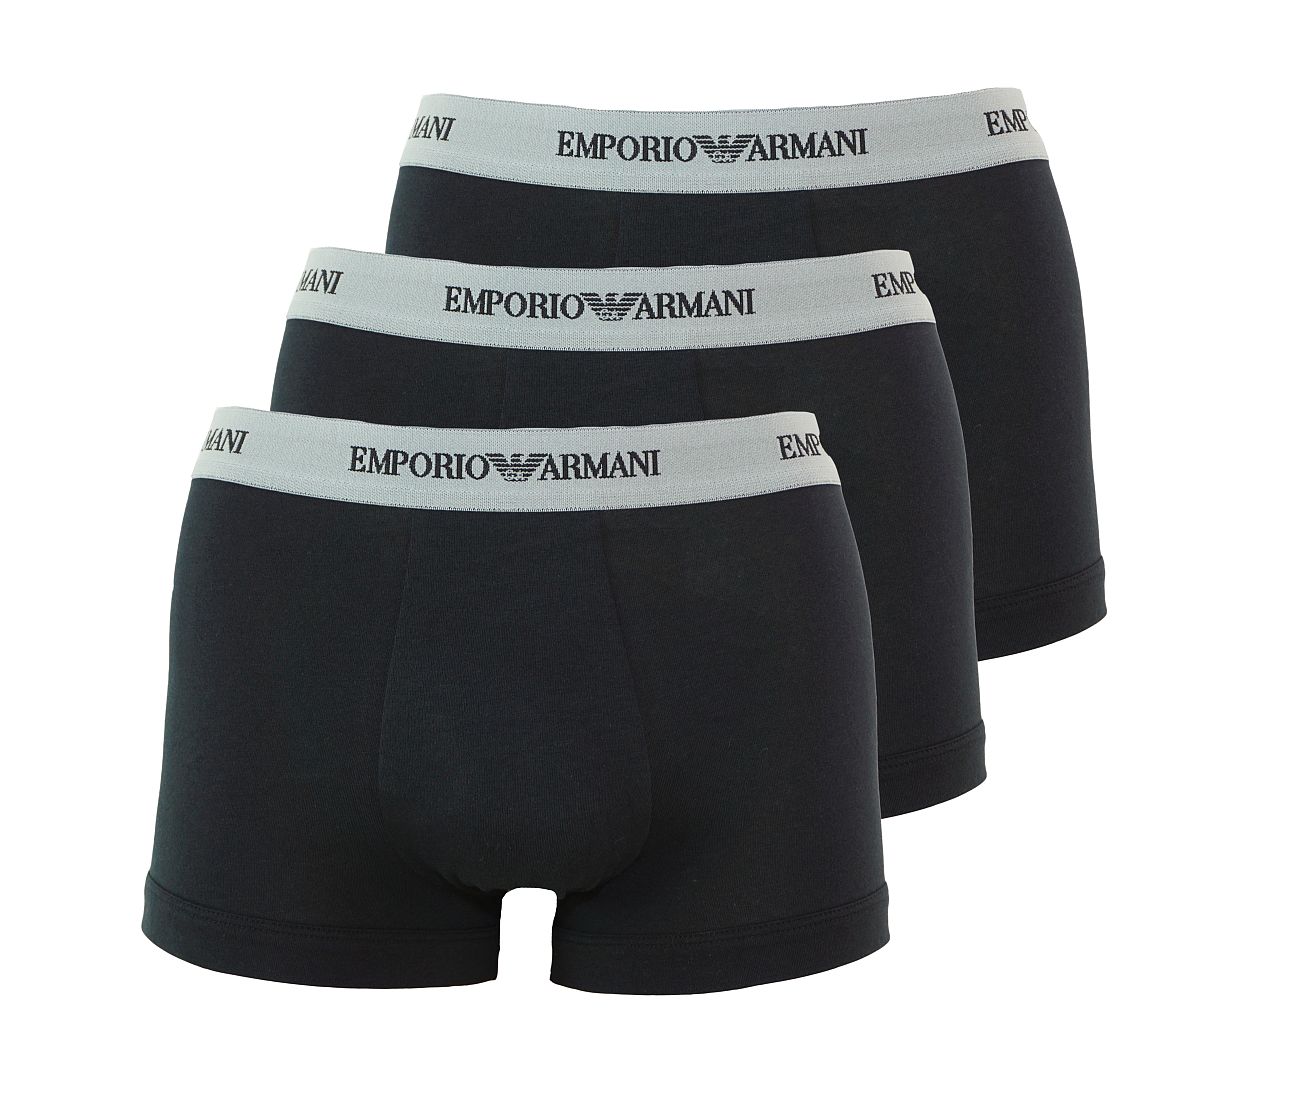 Emporio Armani 3er Pack Underwear Trunk Shorts Unterhose schwarz 111357 CC717 00120